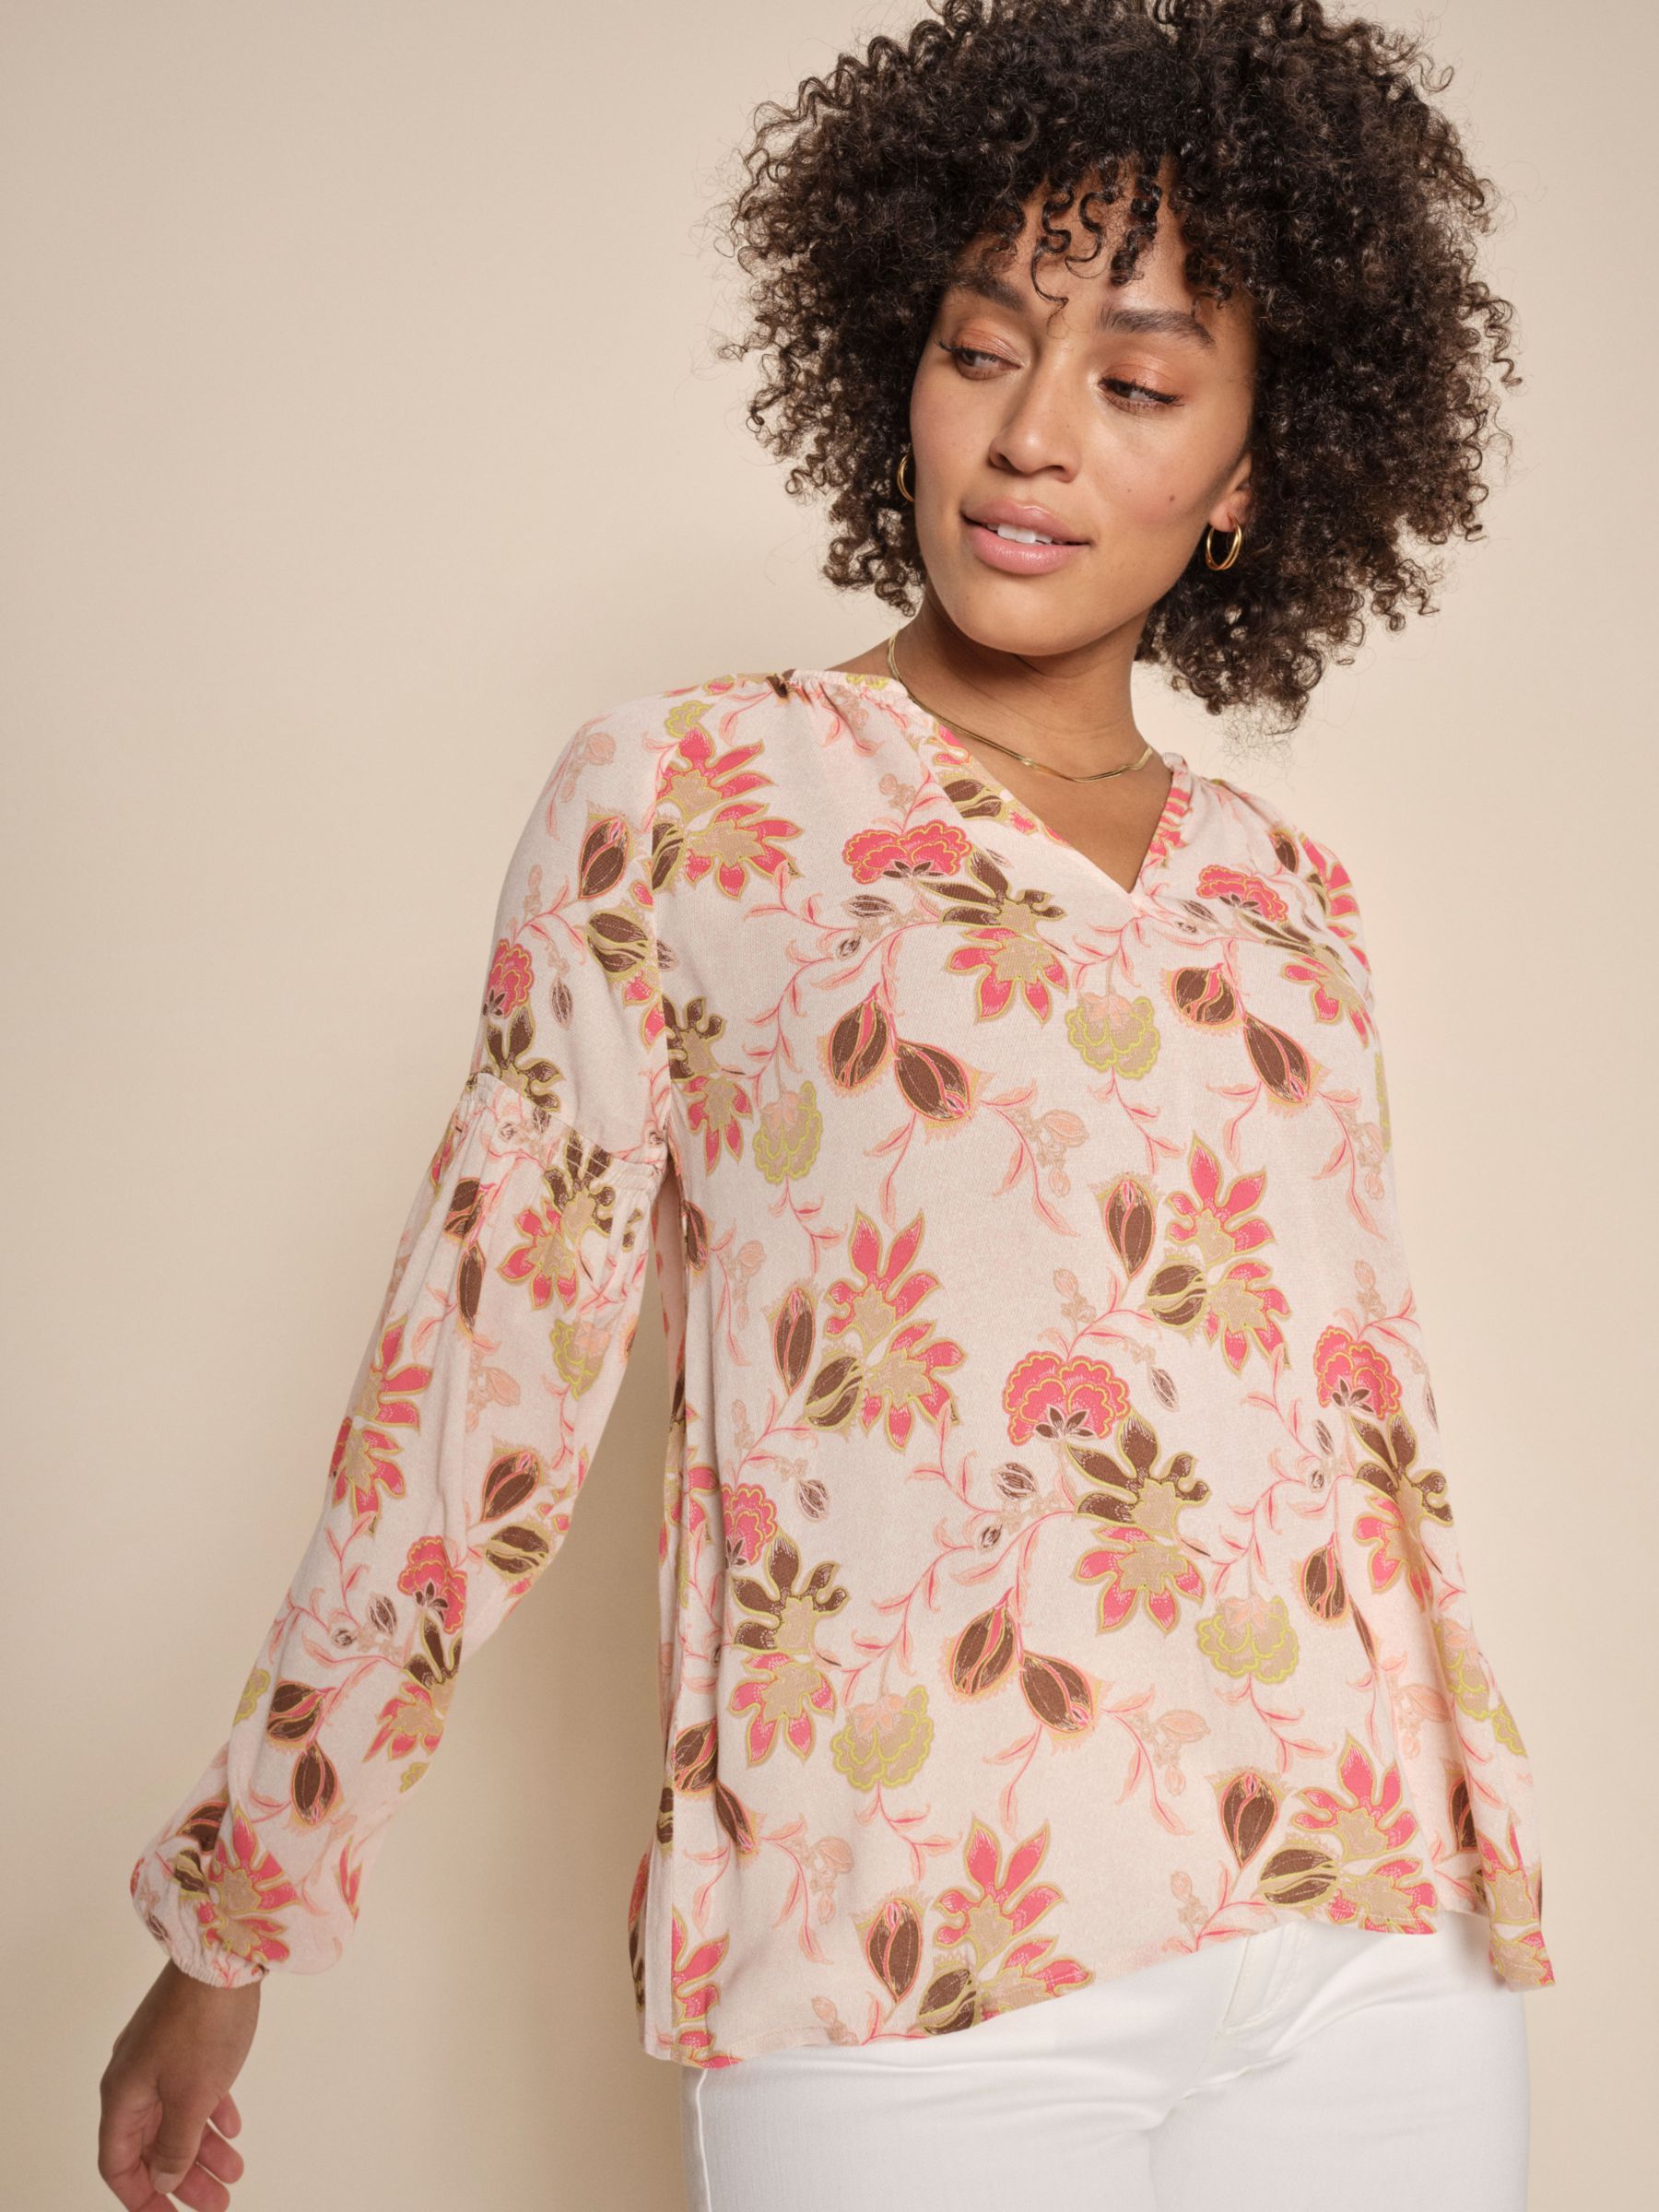 Tjana Fleur Блузка с цветочным принтом MOS MOSH, розовый блузка с цветочным принтом и v образным вырезом xs зеленый